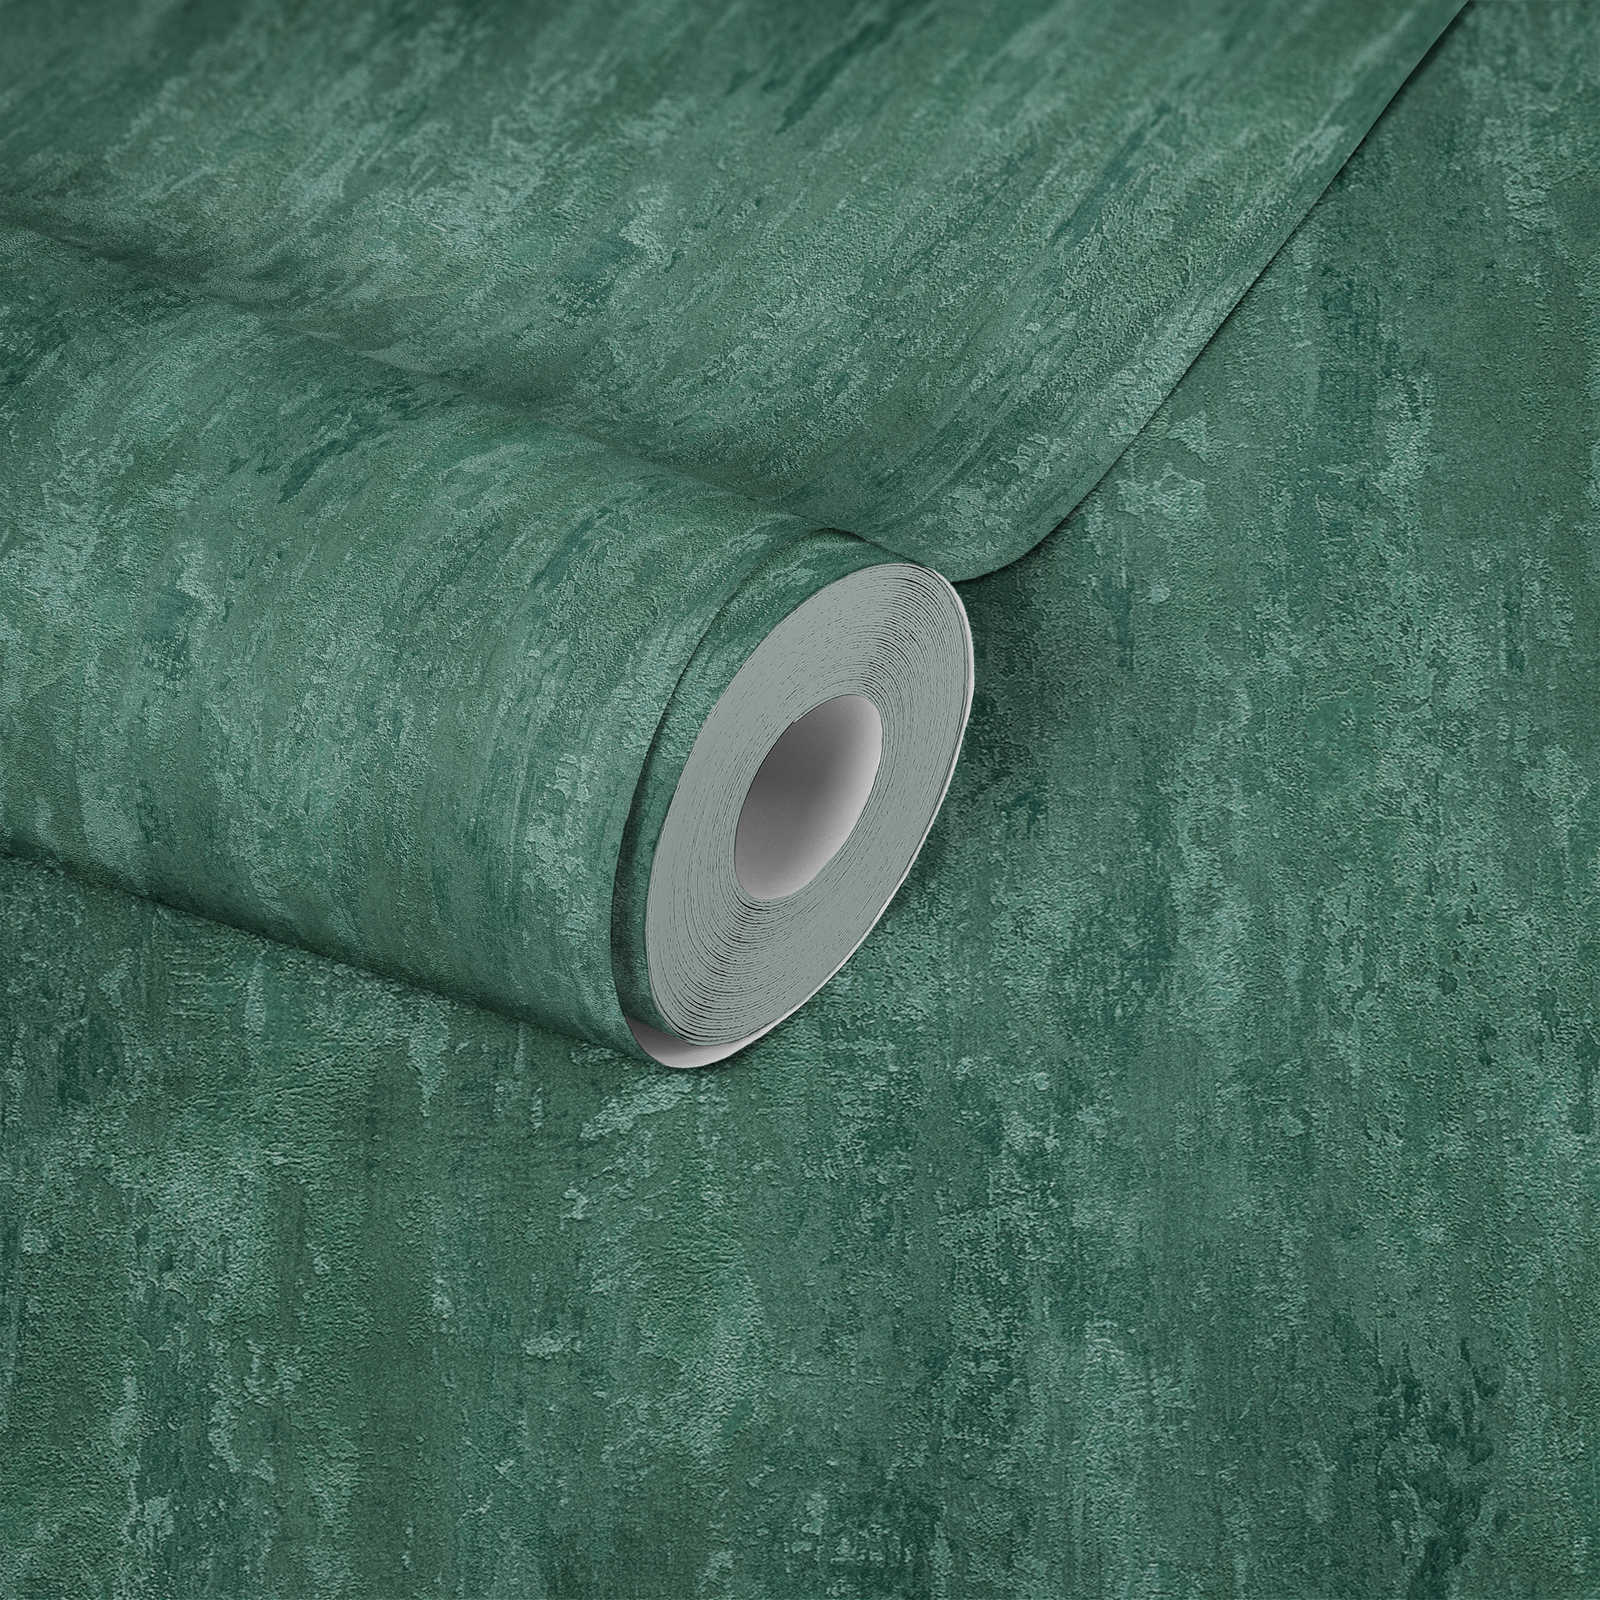             behangpapier industriële stijl met textuureffect - groen, metallic
        